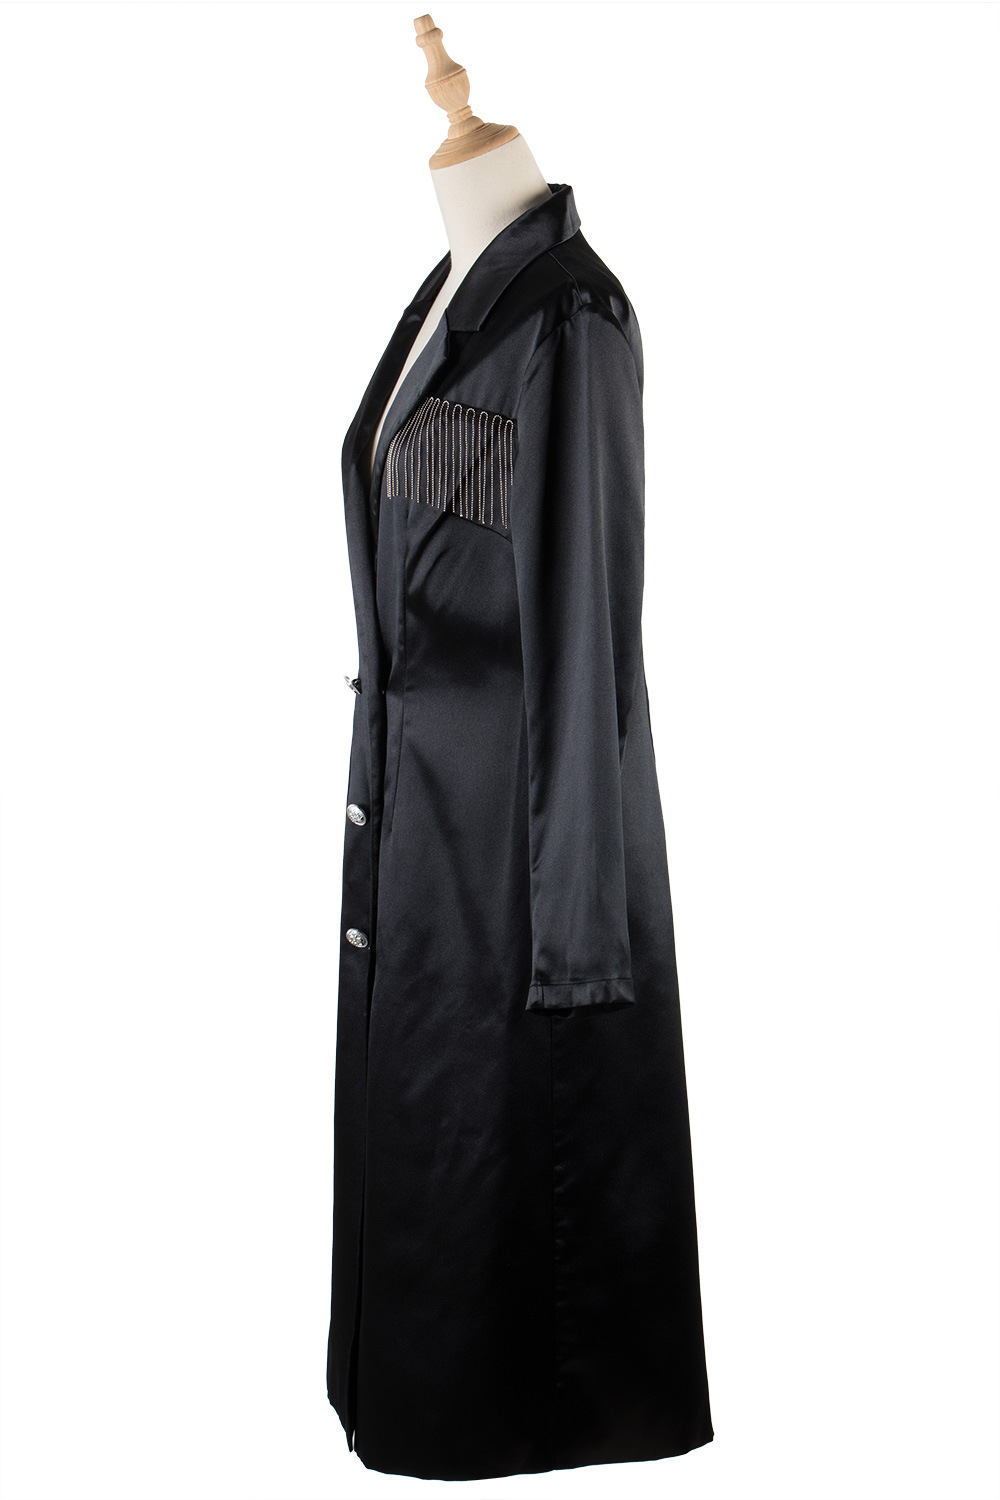 European style tassels windbreaker satin long coat for women